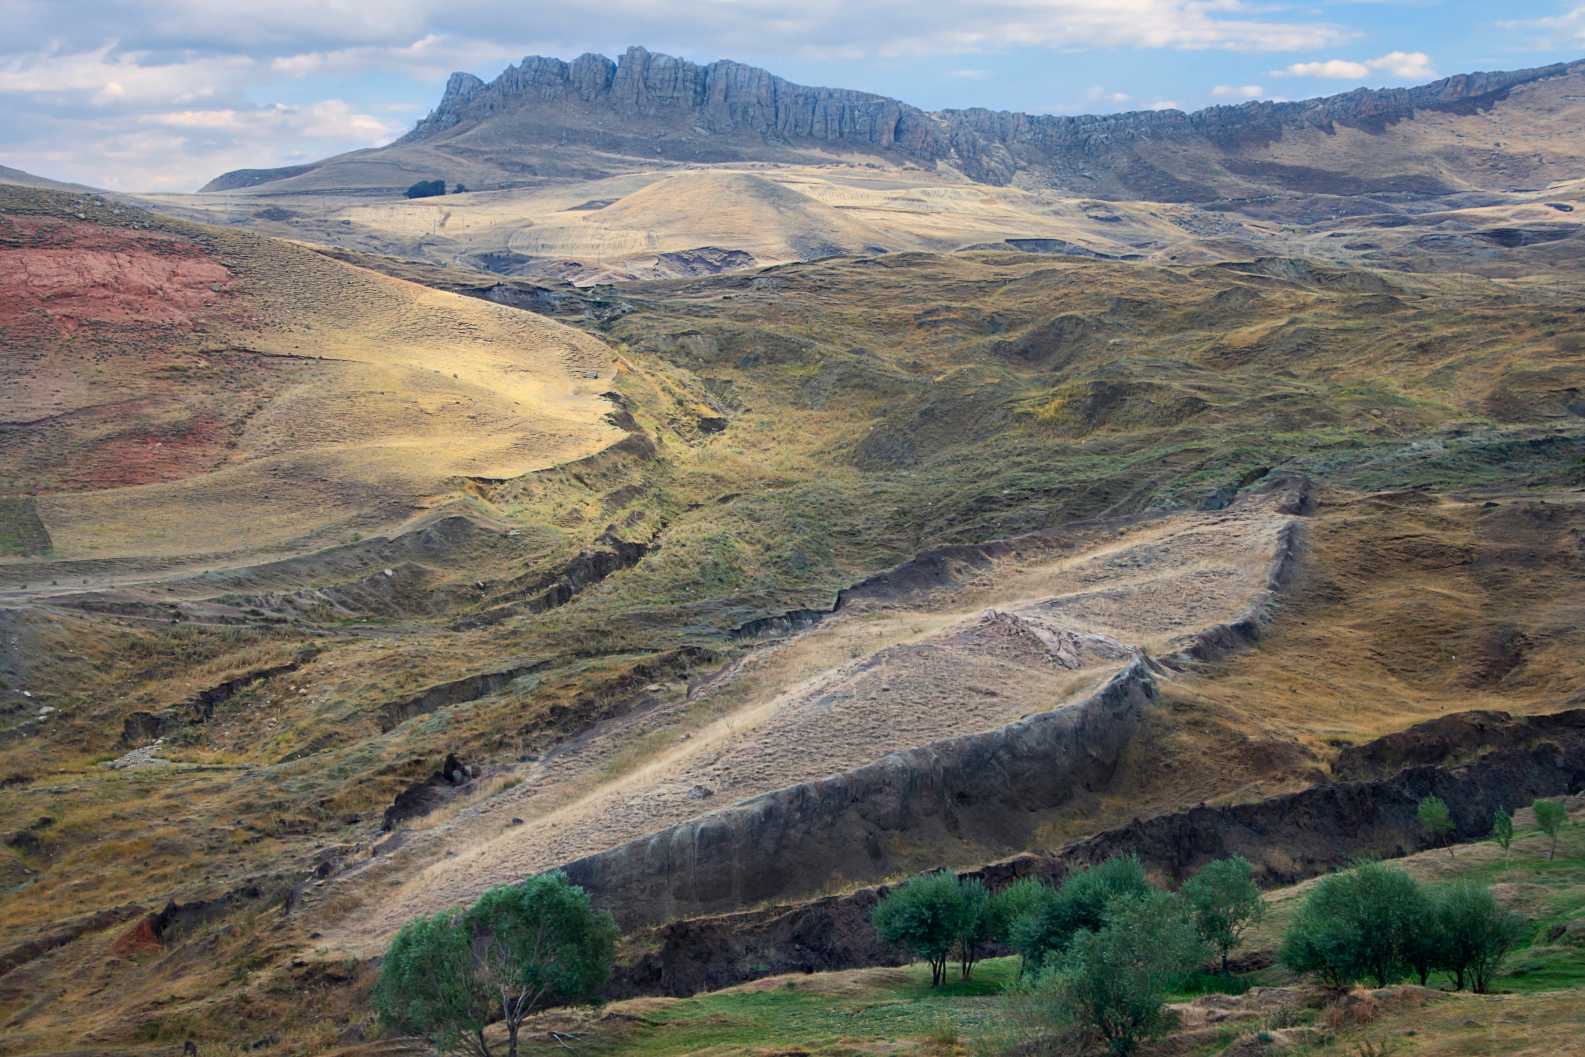 Restos da Arca de Noé com formação rochosa em forma de barco no local perto do Monte Ararat, onde acredita-se que a arca foi descansada em Dogubeyazit, Turquia